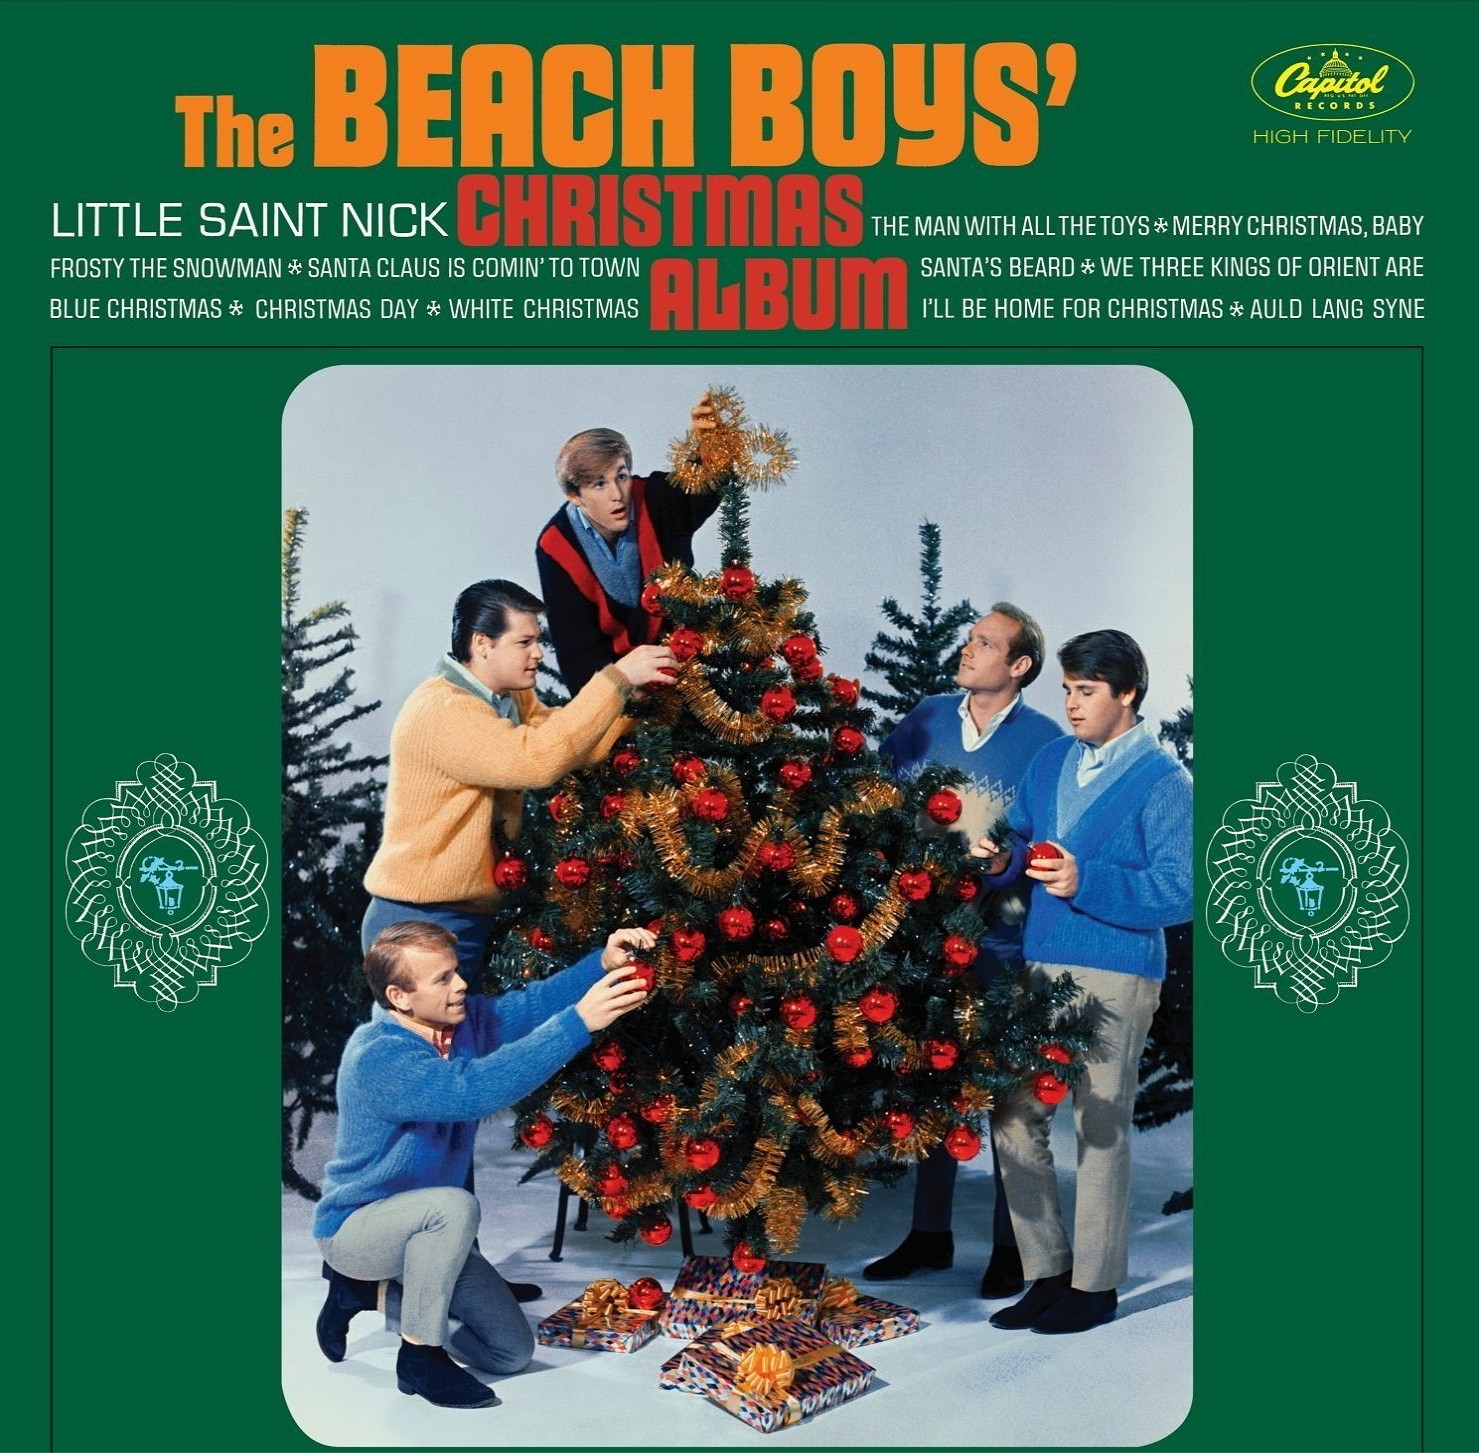 The Beach Boys' Christmas Album cover